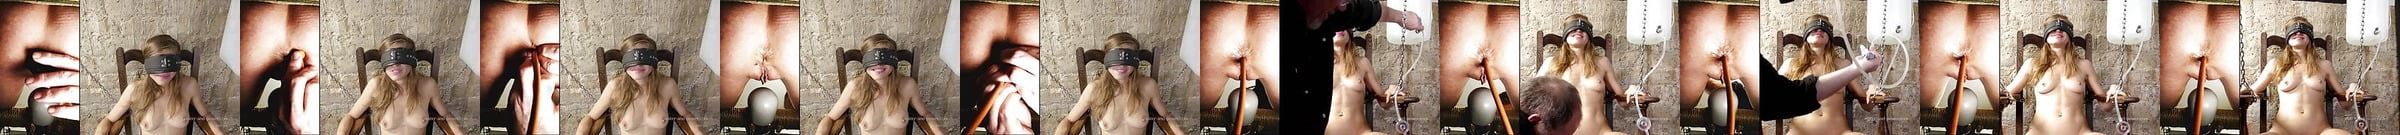 Best Enema Girl Porn Videos Xhamster